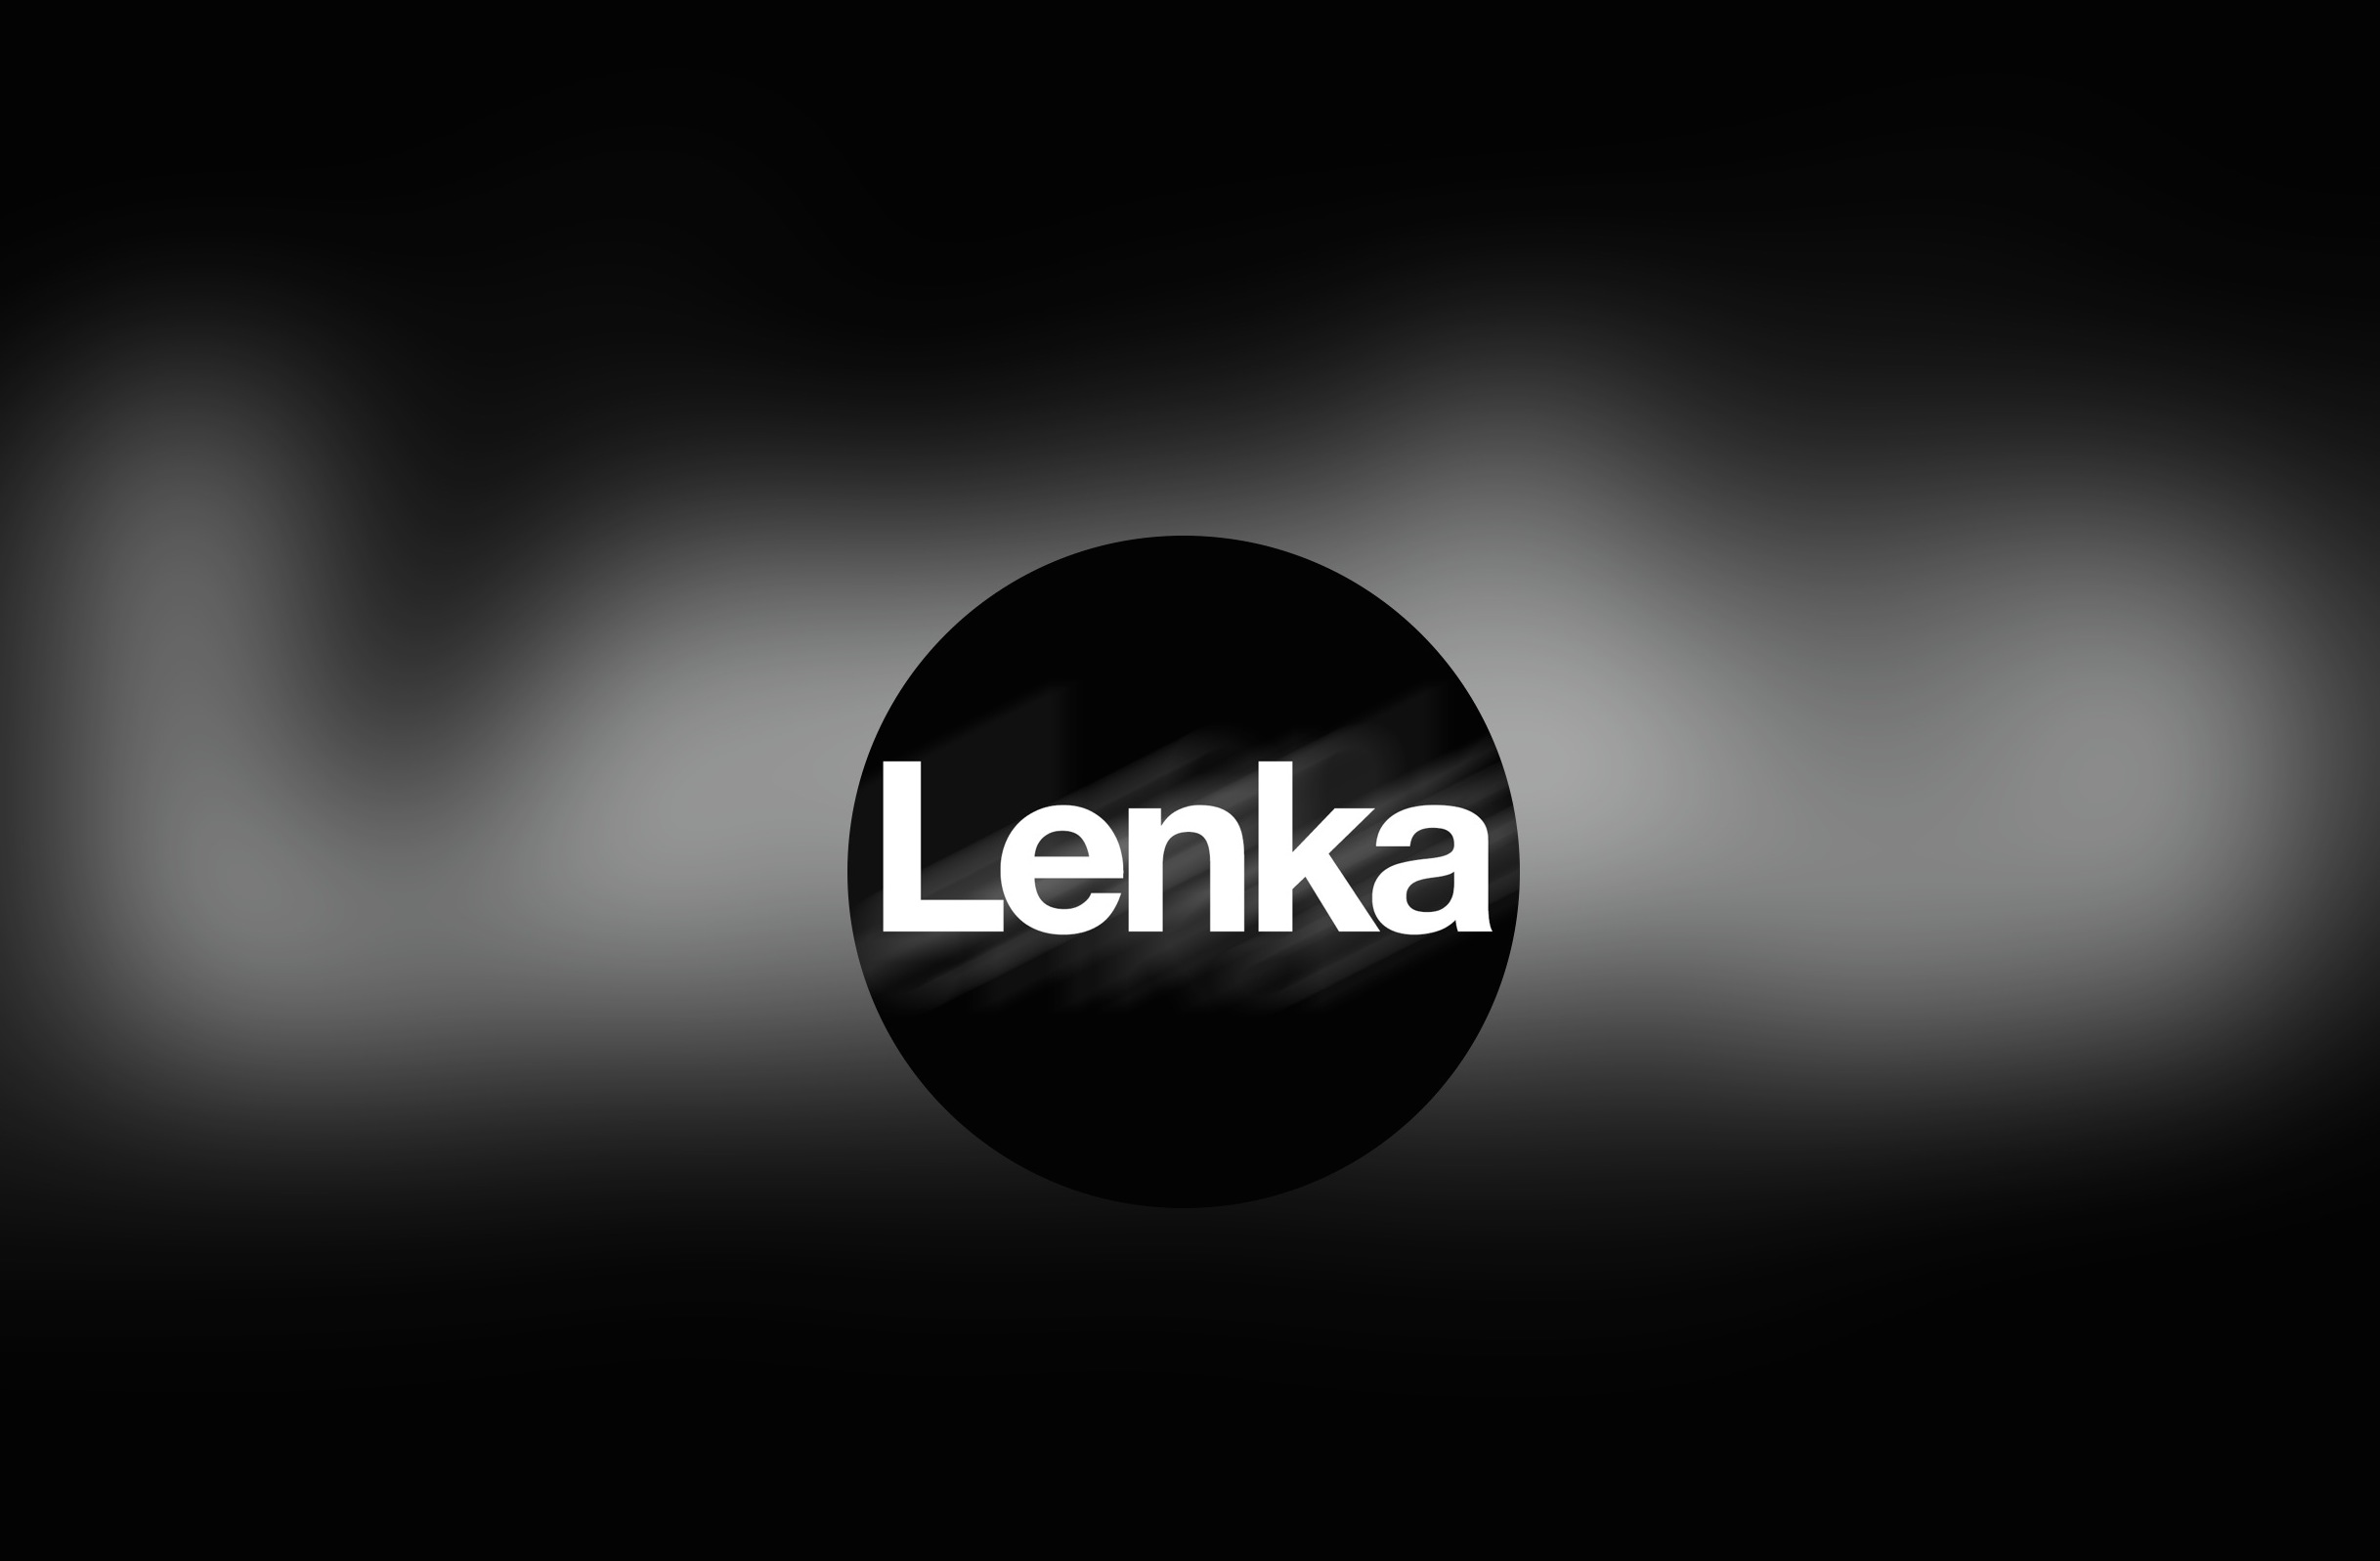 Lenka делает лучшие черно-белые фотографии на iPhone, которые вы когда-либо видели